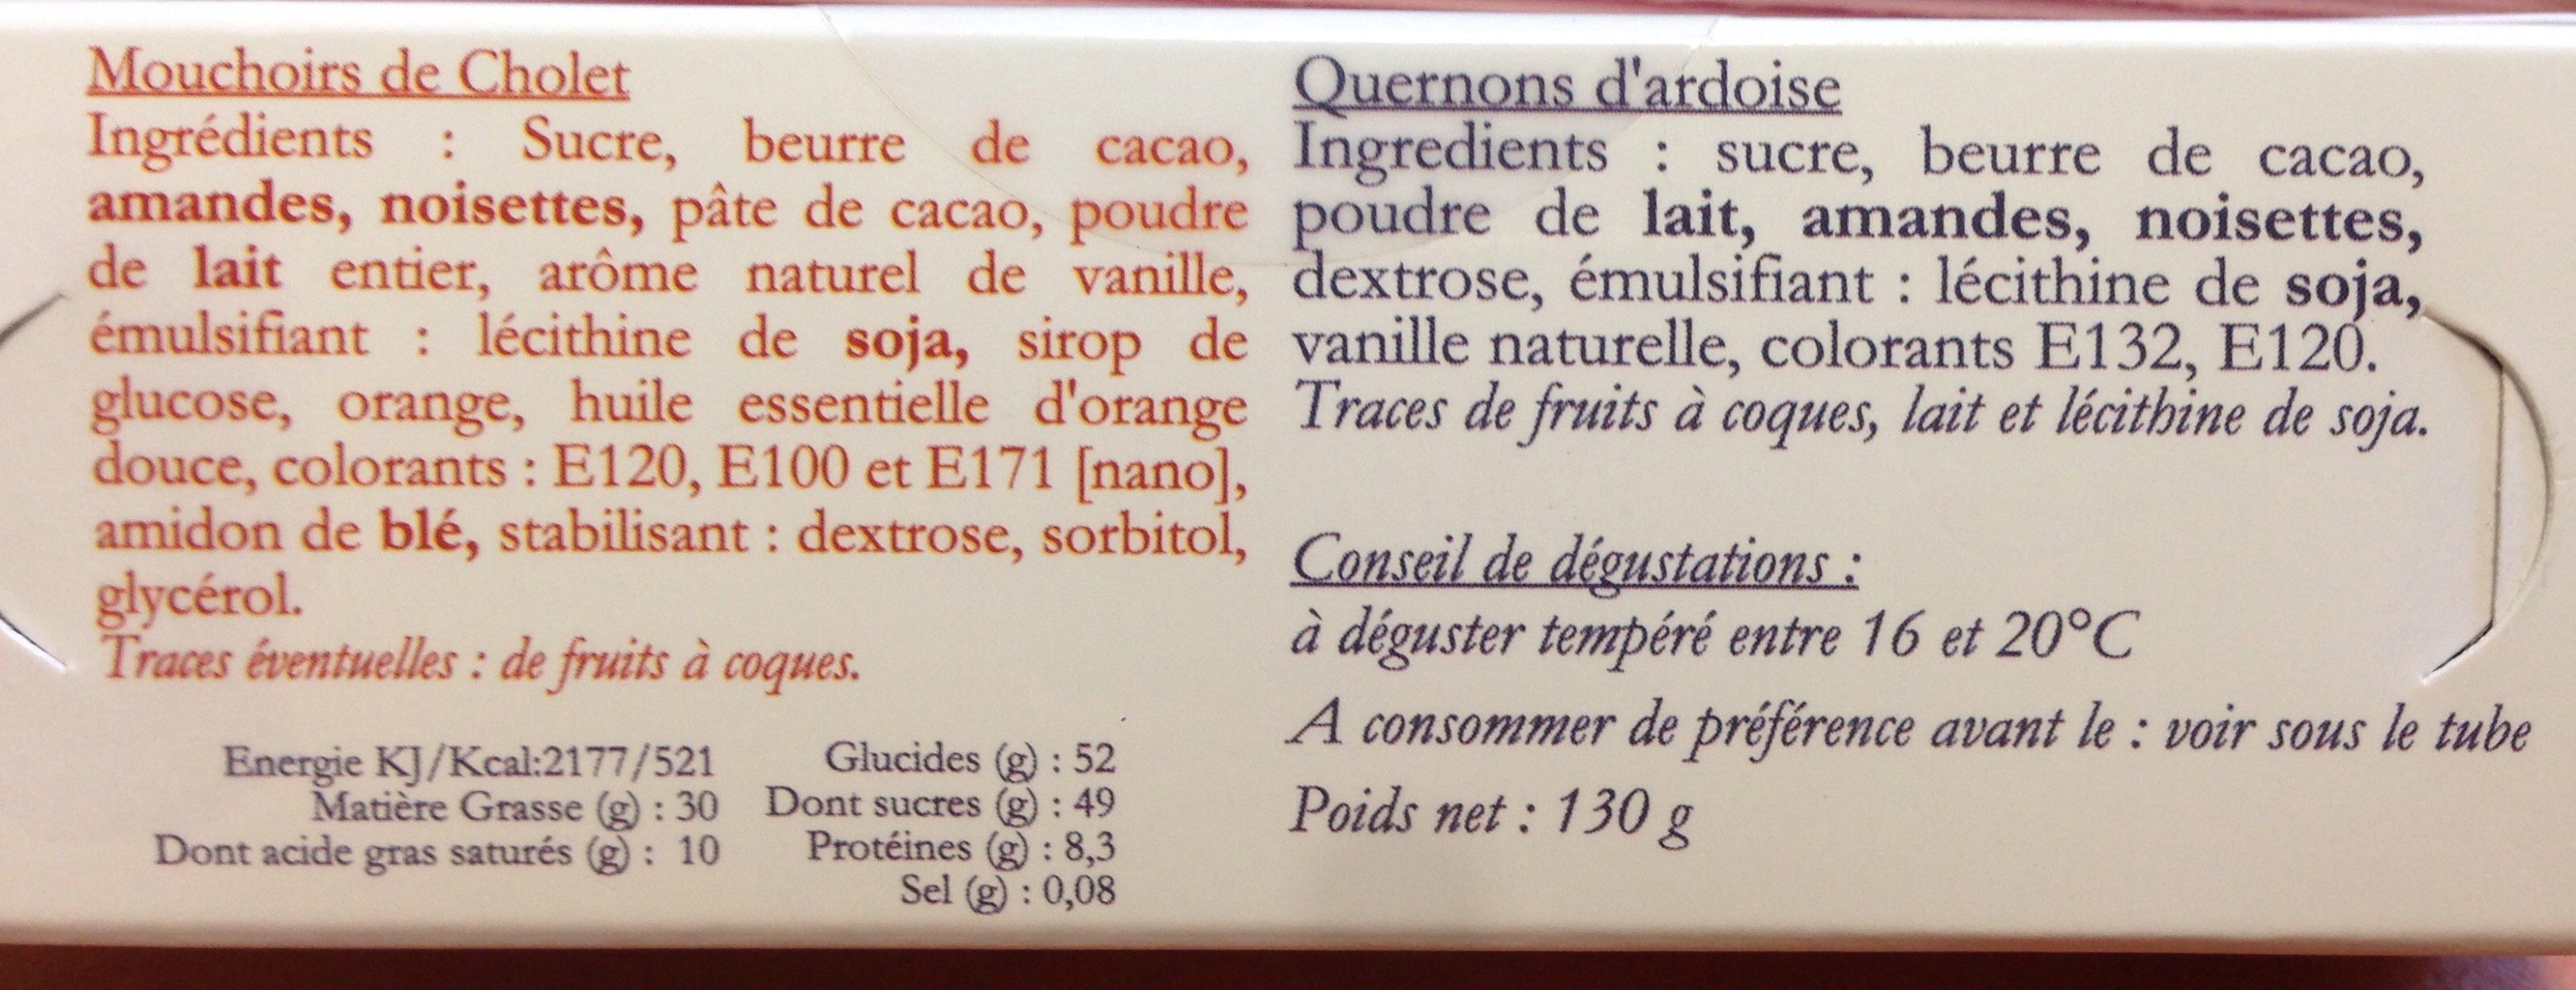 Mouchoir de cholet & quernons d'ardoise - Ingredients - fr